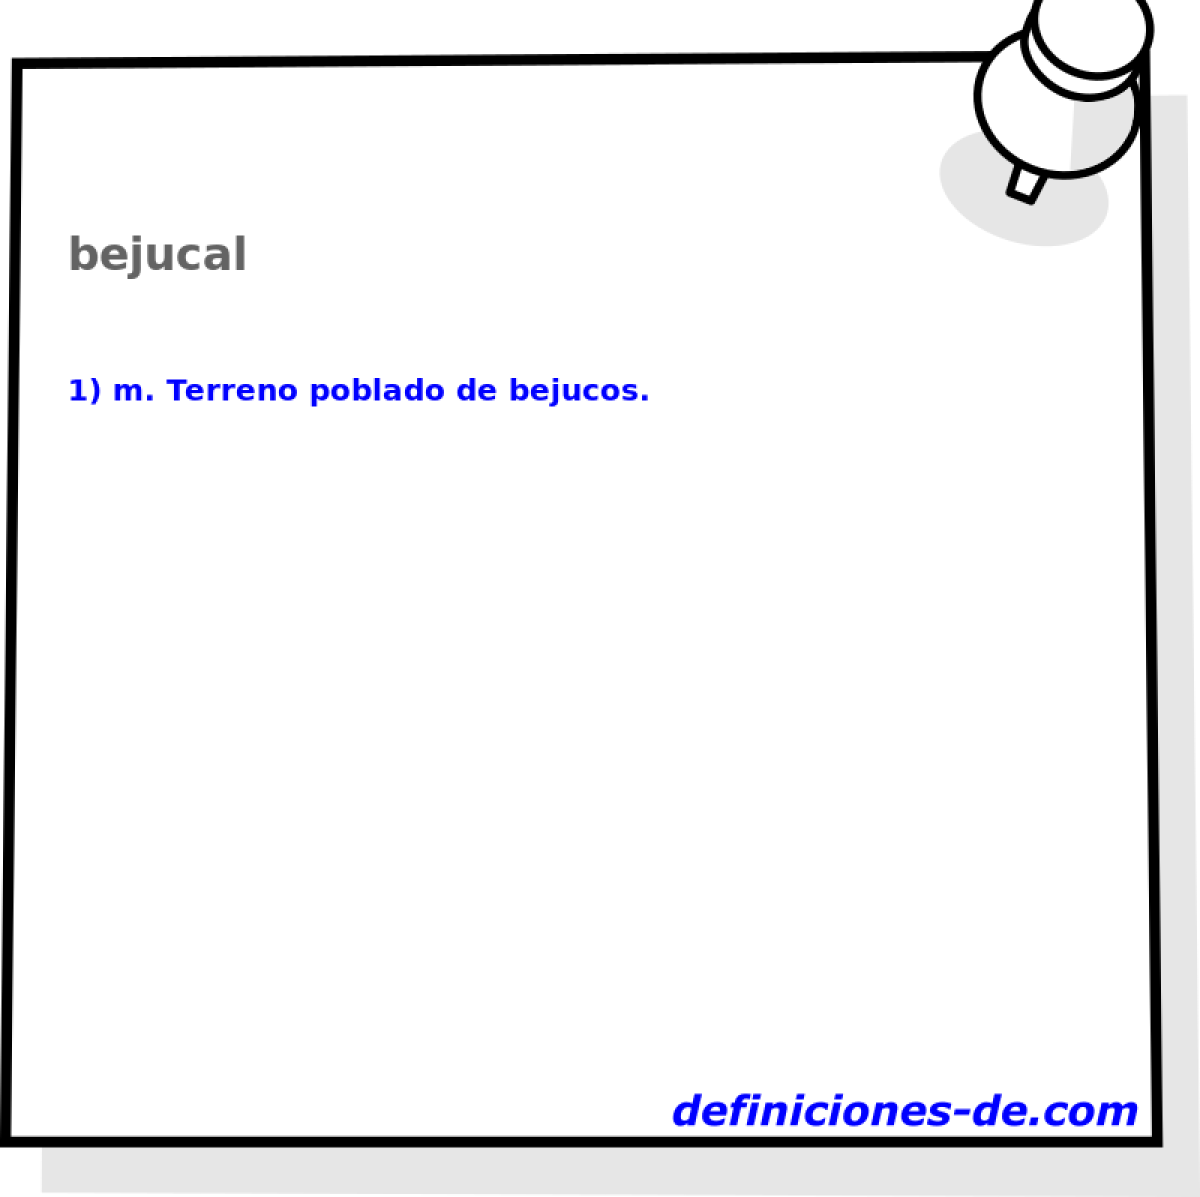 bejucal 